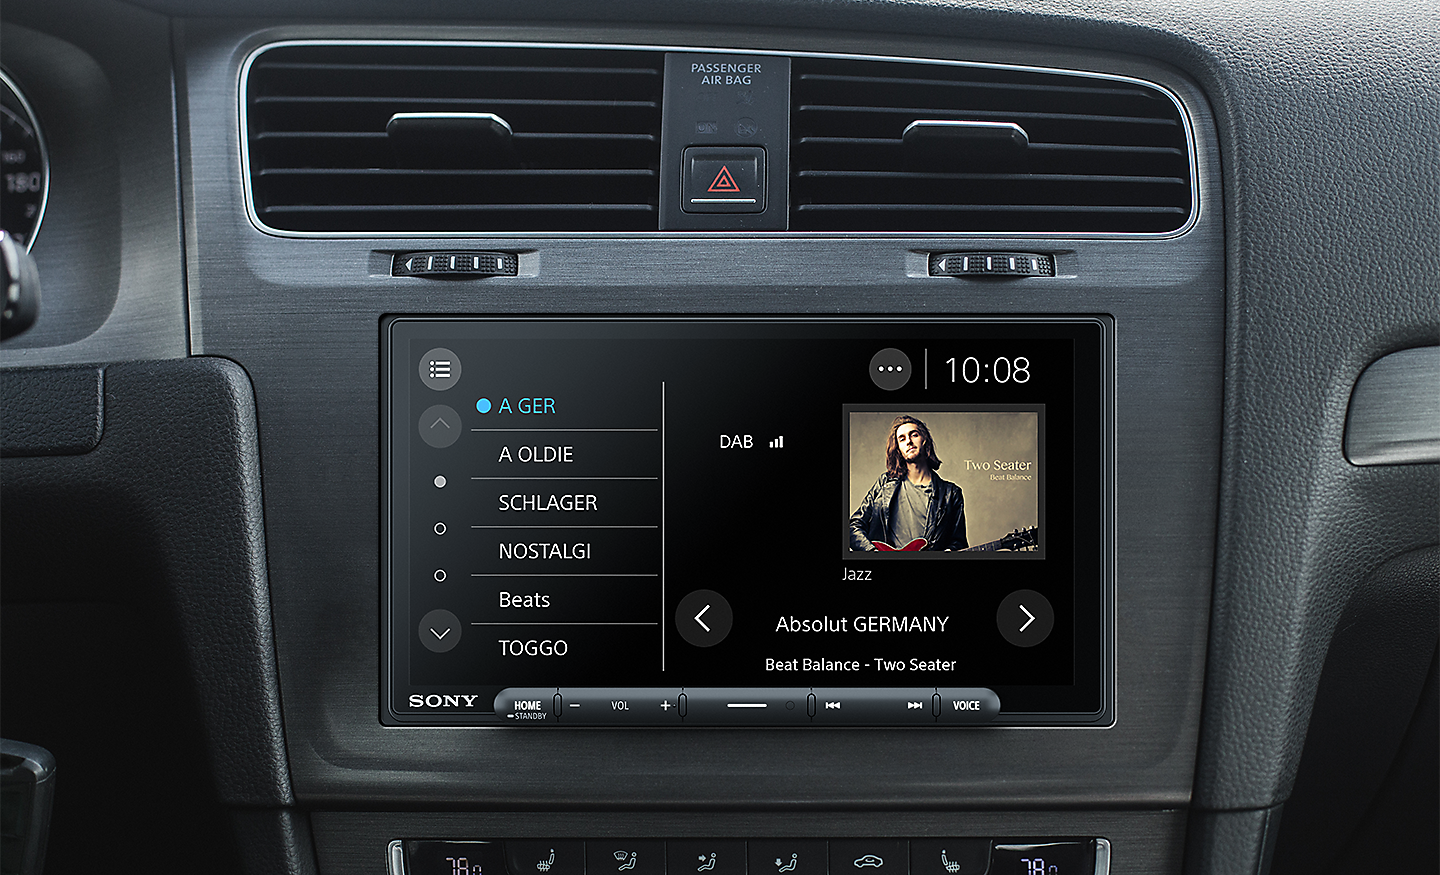 Image du XAV-AX6050 sur un tableau de bord avec l'interface radio DAB à l'écran